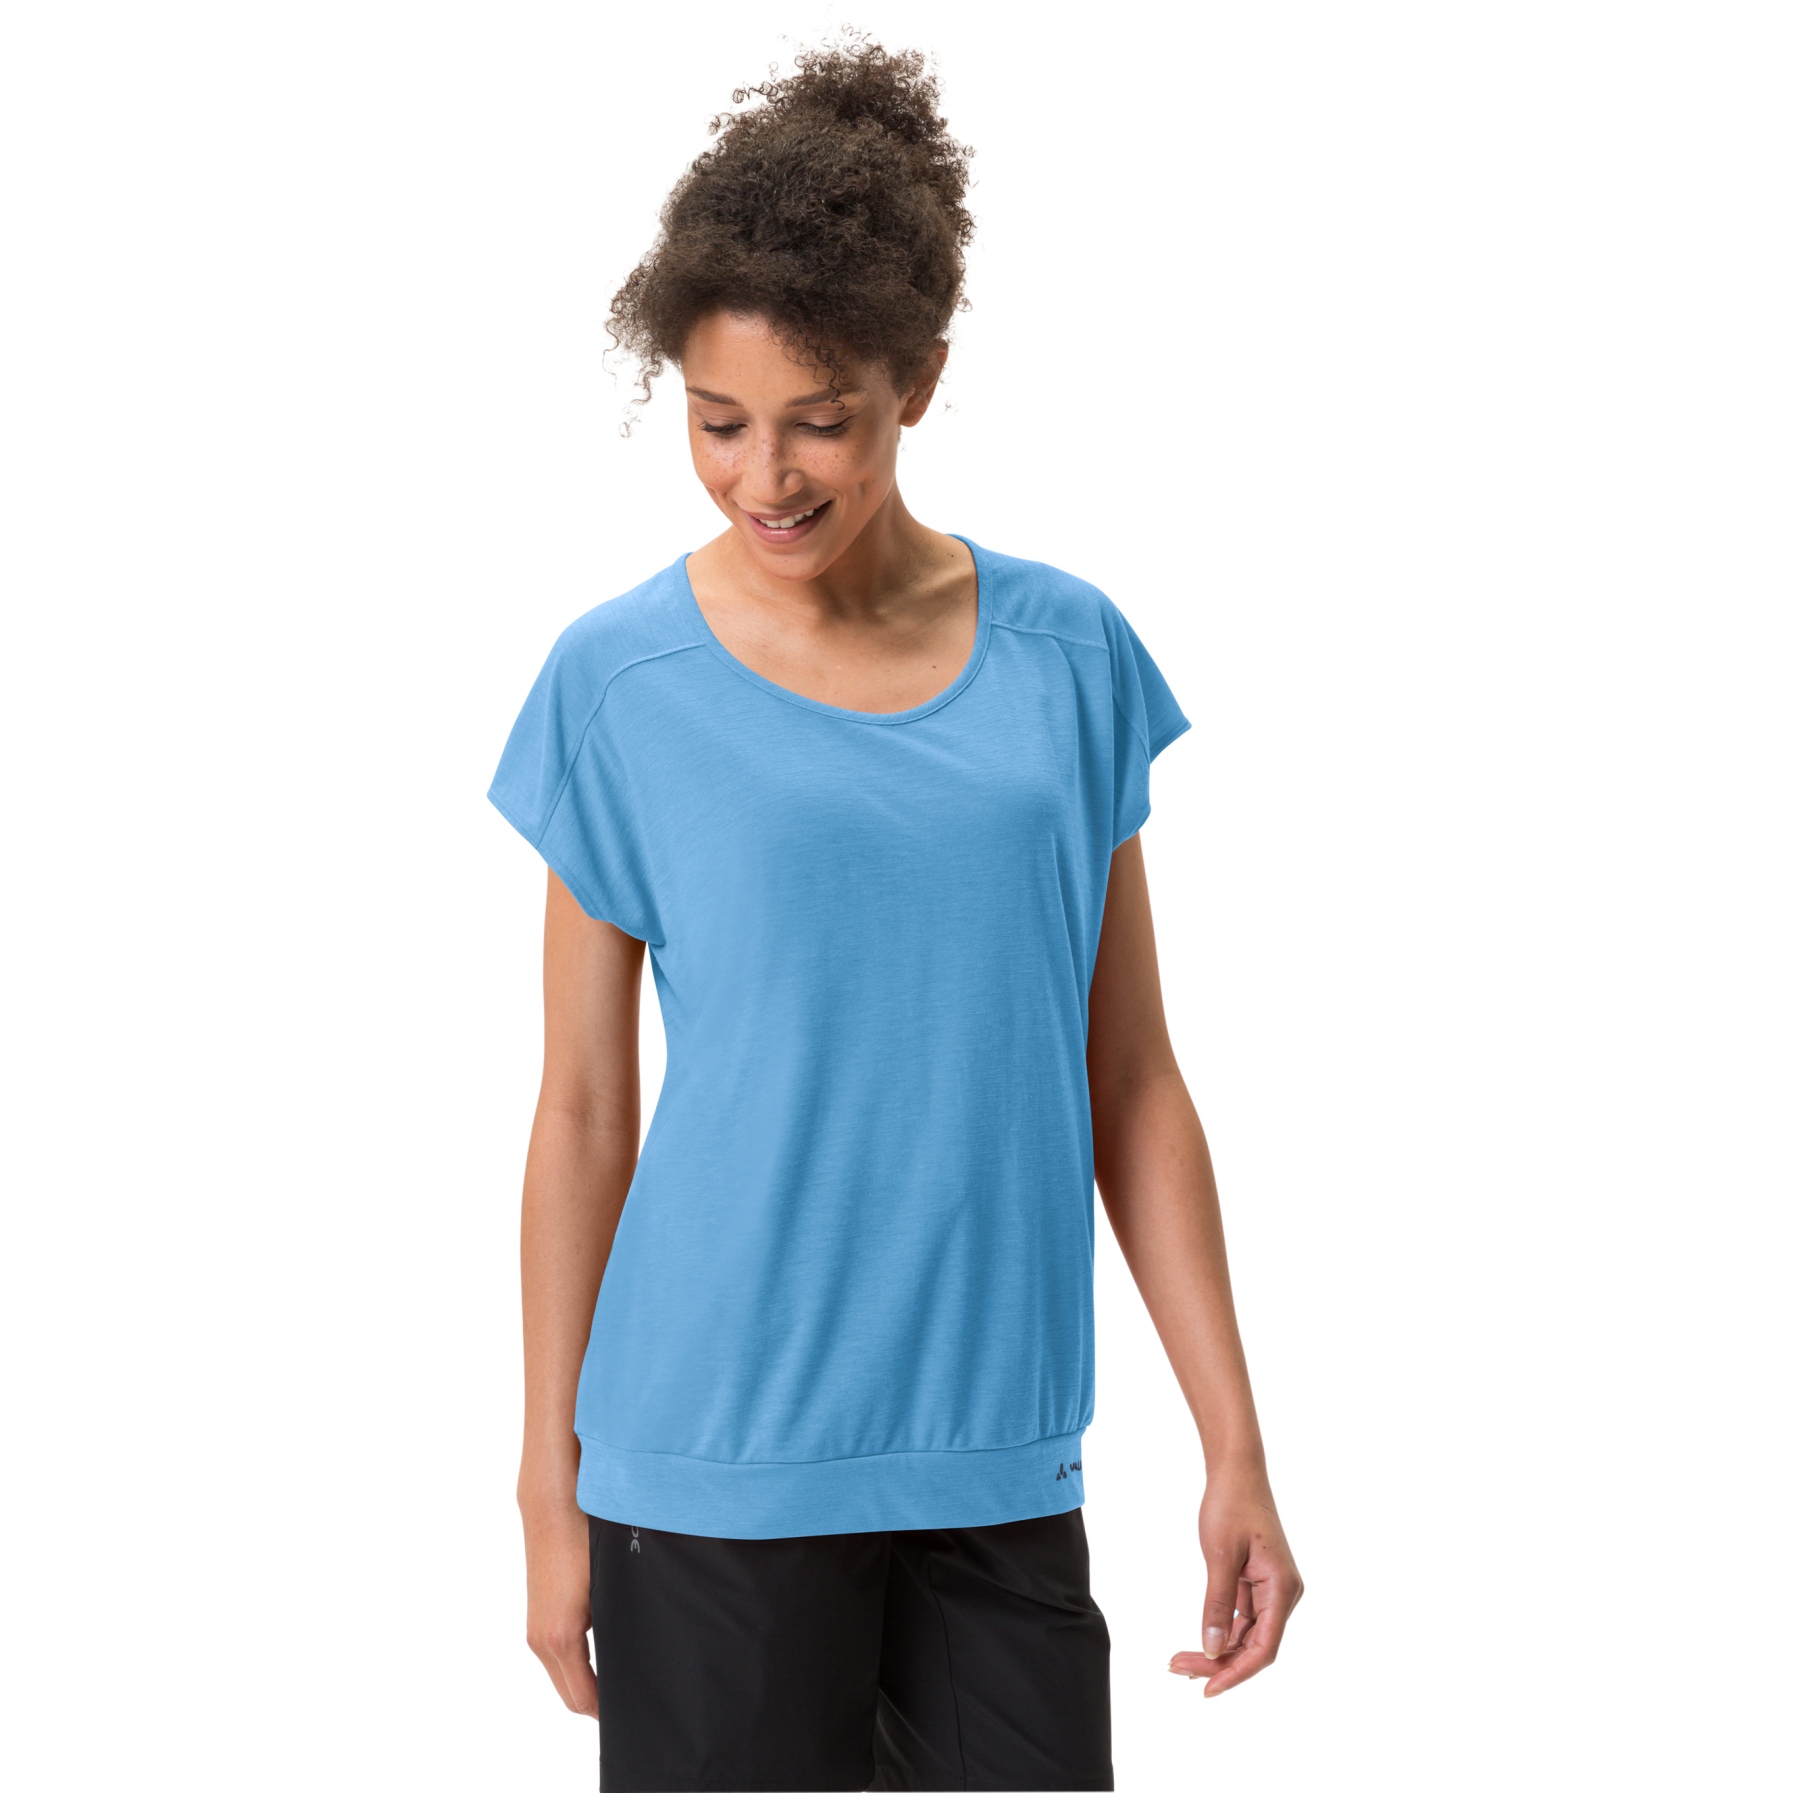 Produktbild von Vaude Skomer Damen T-Shirt III - blue jay